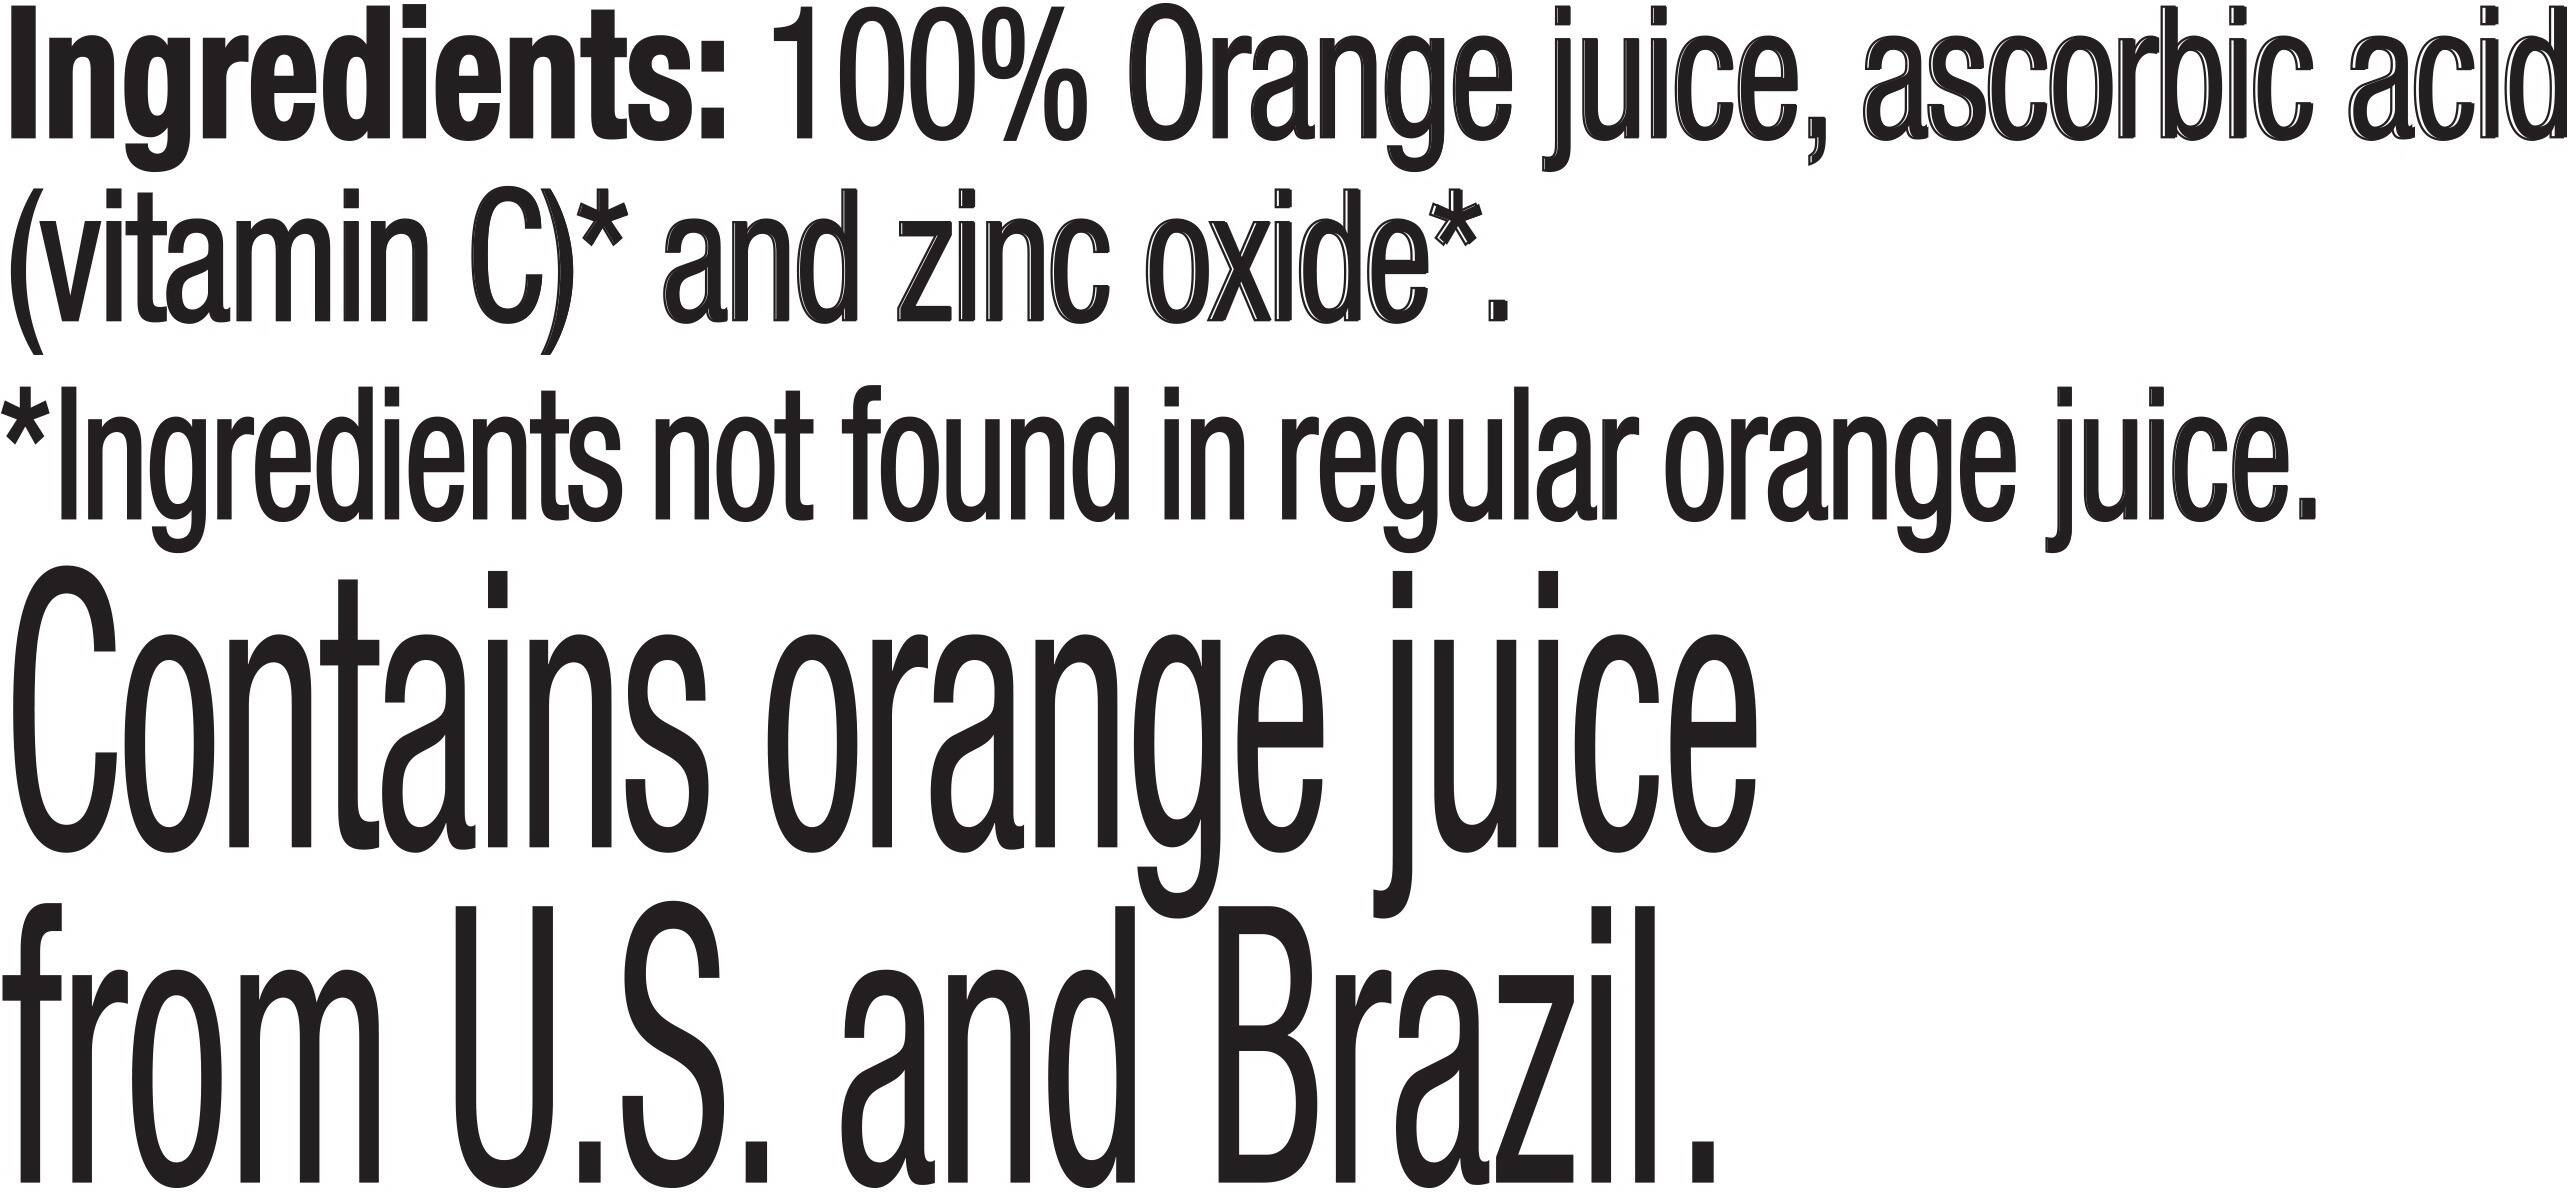 Image describing nutrition information for product Tropicana Pure Premium Orange Juice No Pulp Vitamin C & Zinc